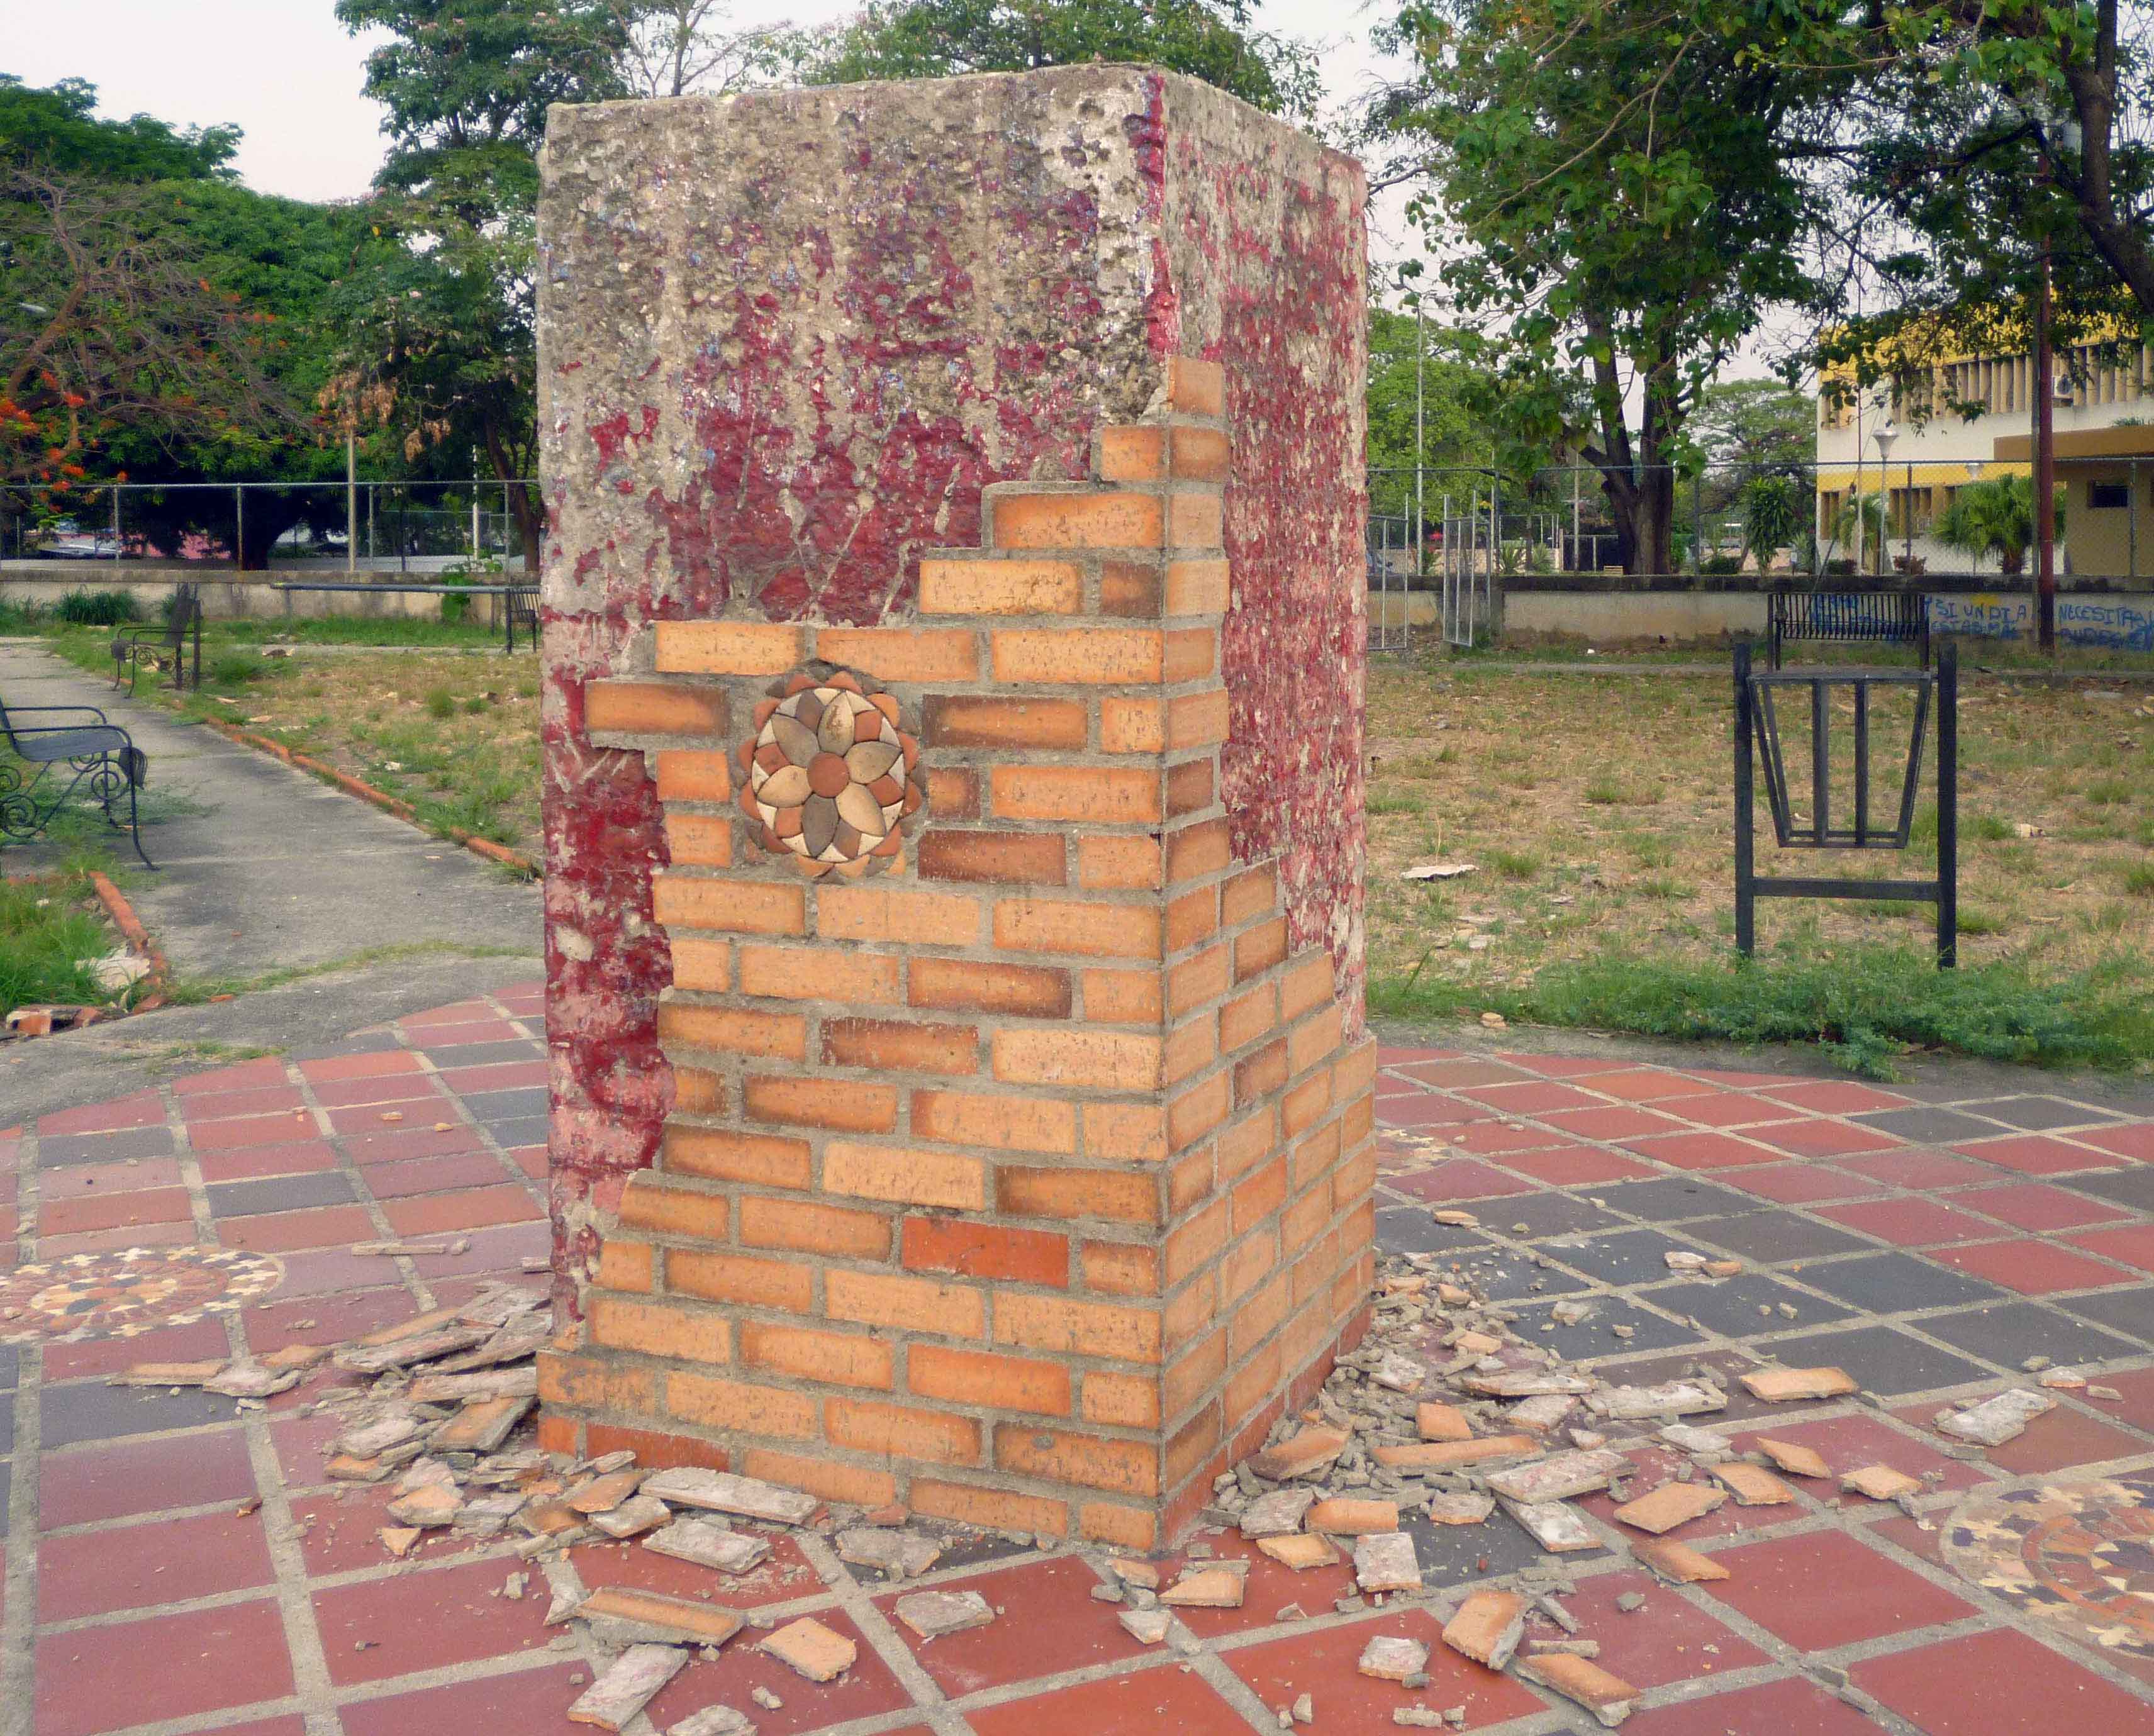 El pedestal sin el busto de bronce de José Antonio Páez. Foto Marinela Araque Rivero / archivo IAM Venezuela, abril de de 2019.